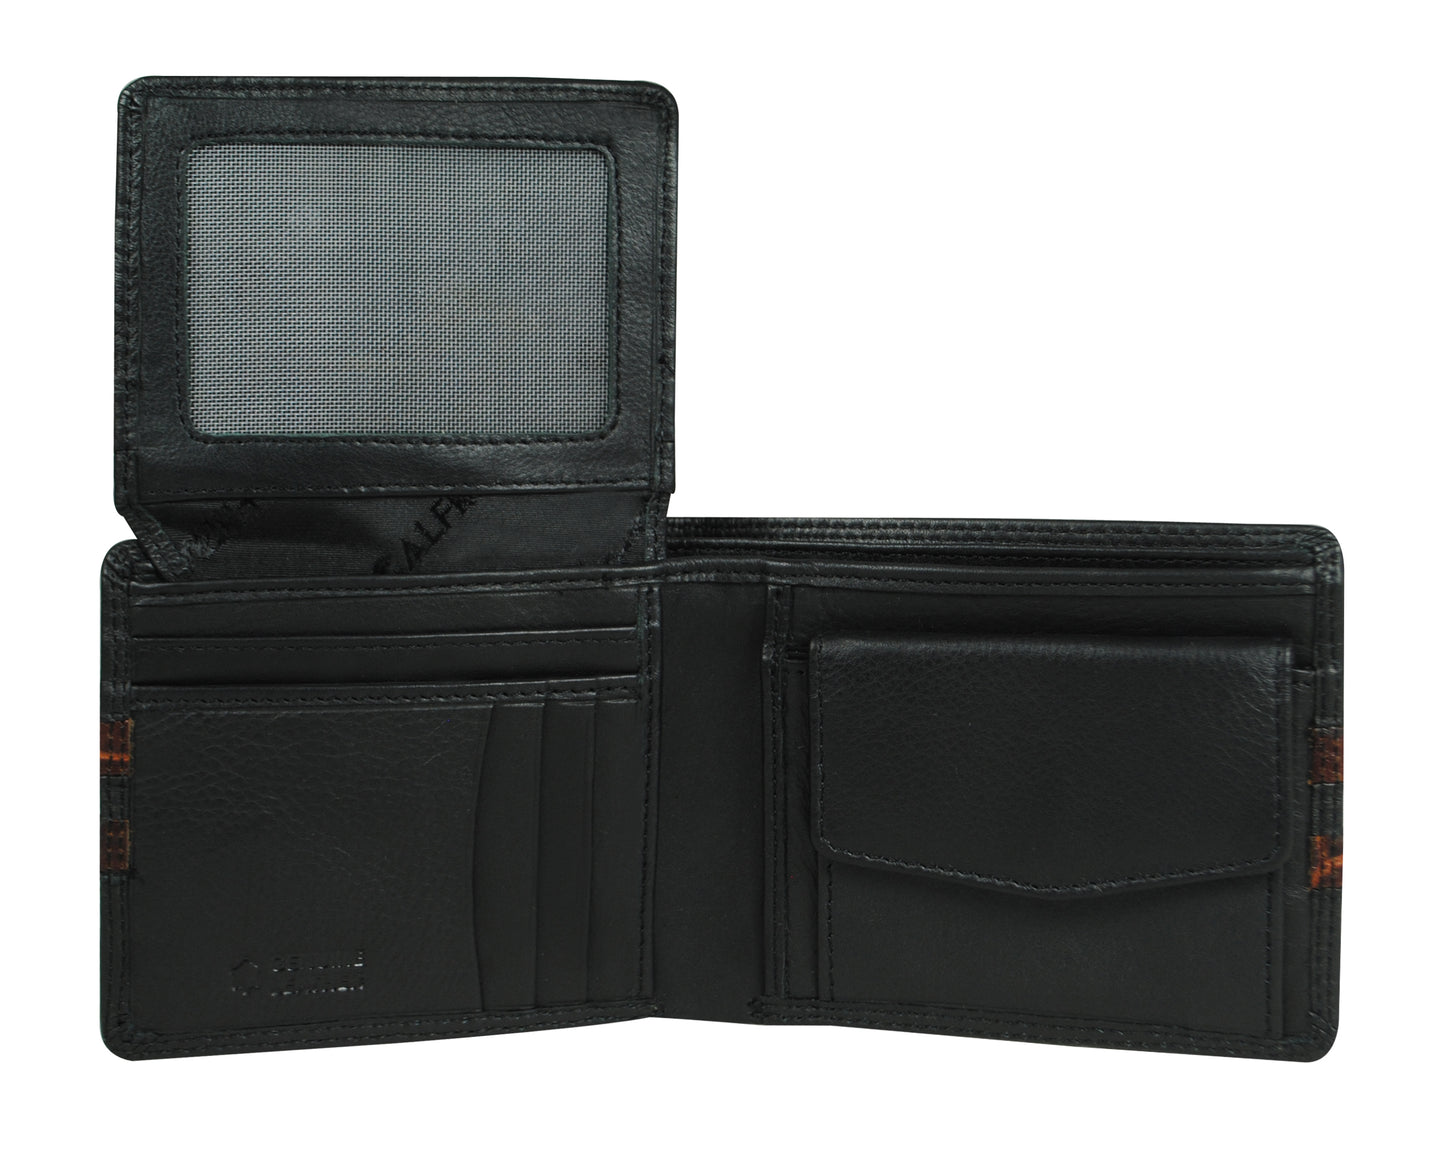 Calfnero Genuine Leather  Men's Wallet (34478-Black-Coco)